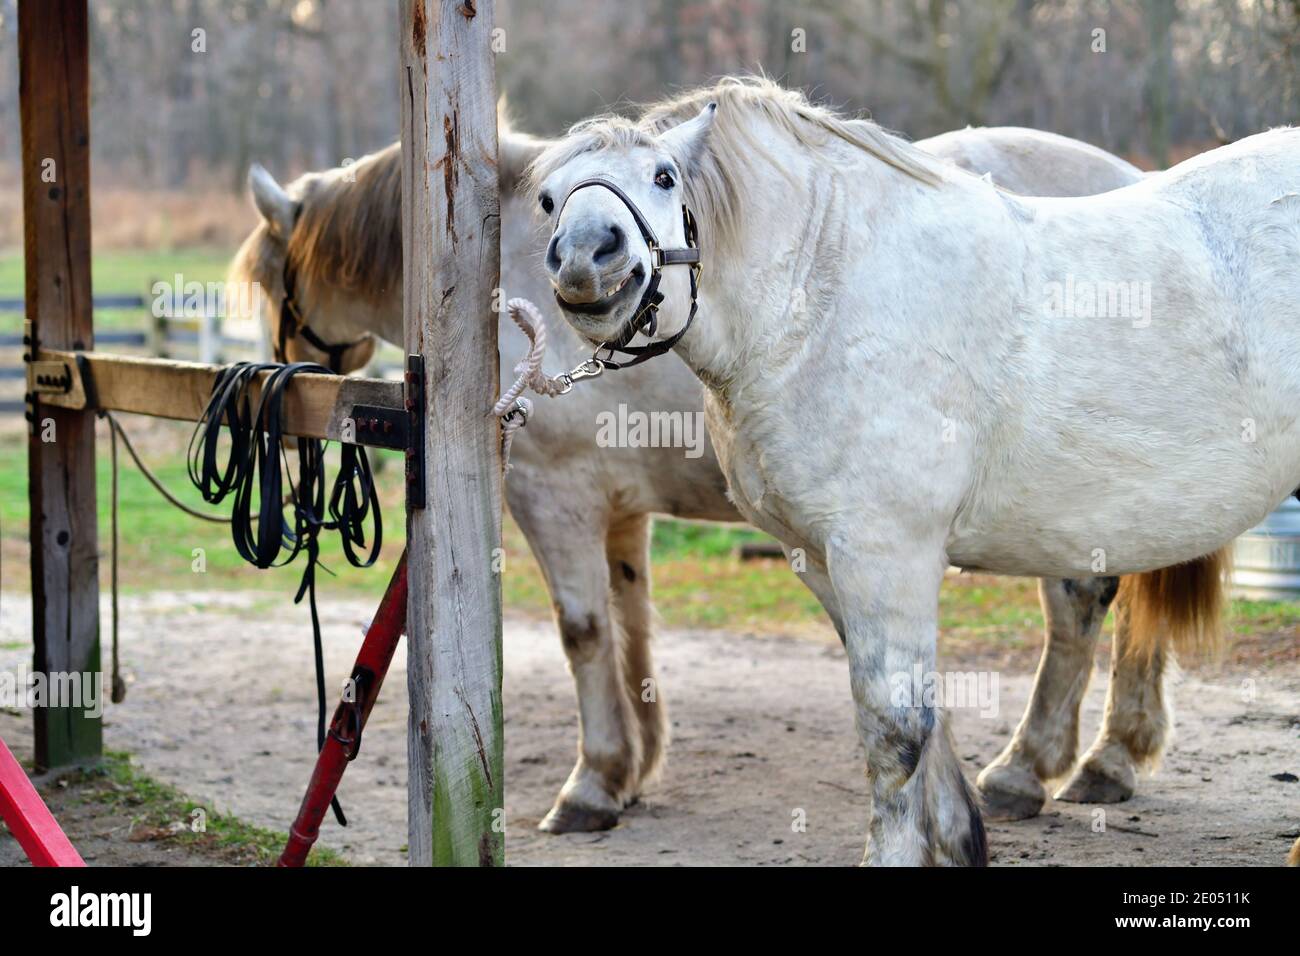 West Chicago, Illinois, Stati Uniti. Dopo aver lavorato nei campi di una fattoria, in attesa di essere nutrito, un cavallo da traino reagisce con ciò che sembra essere un sorriso. Foto Stock